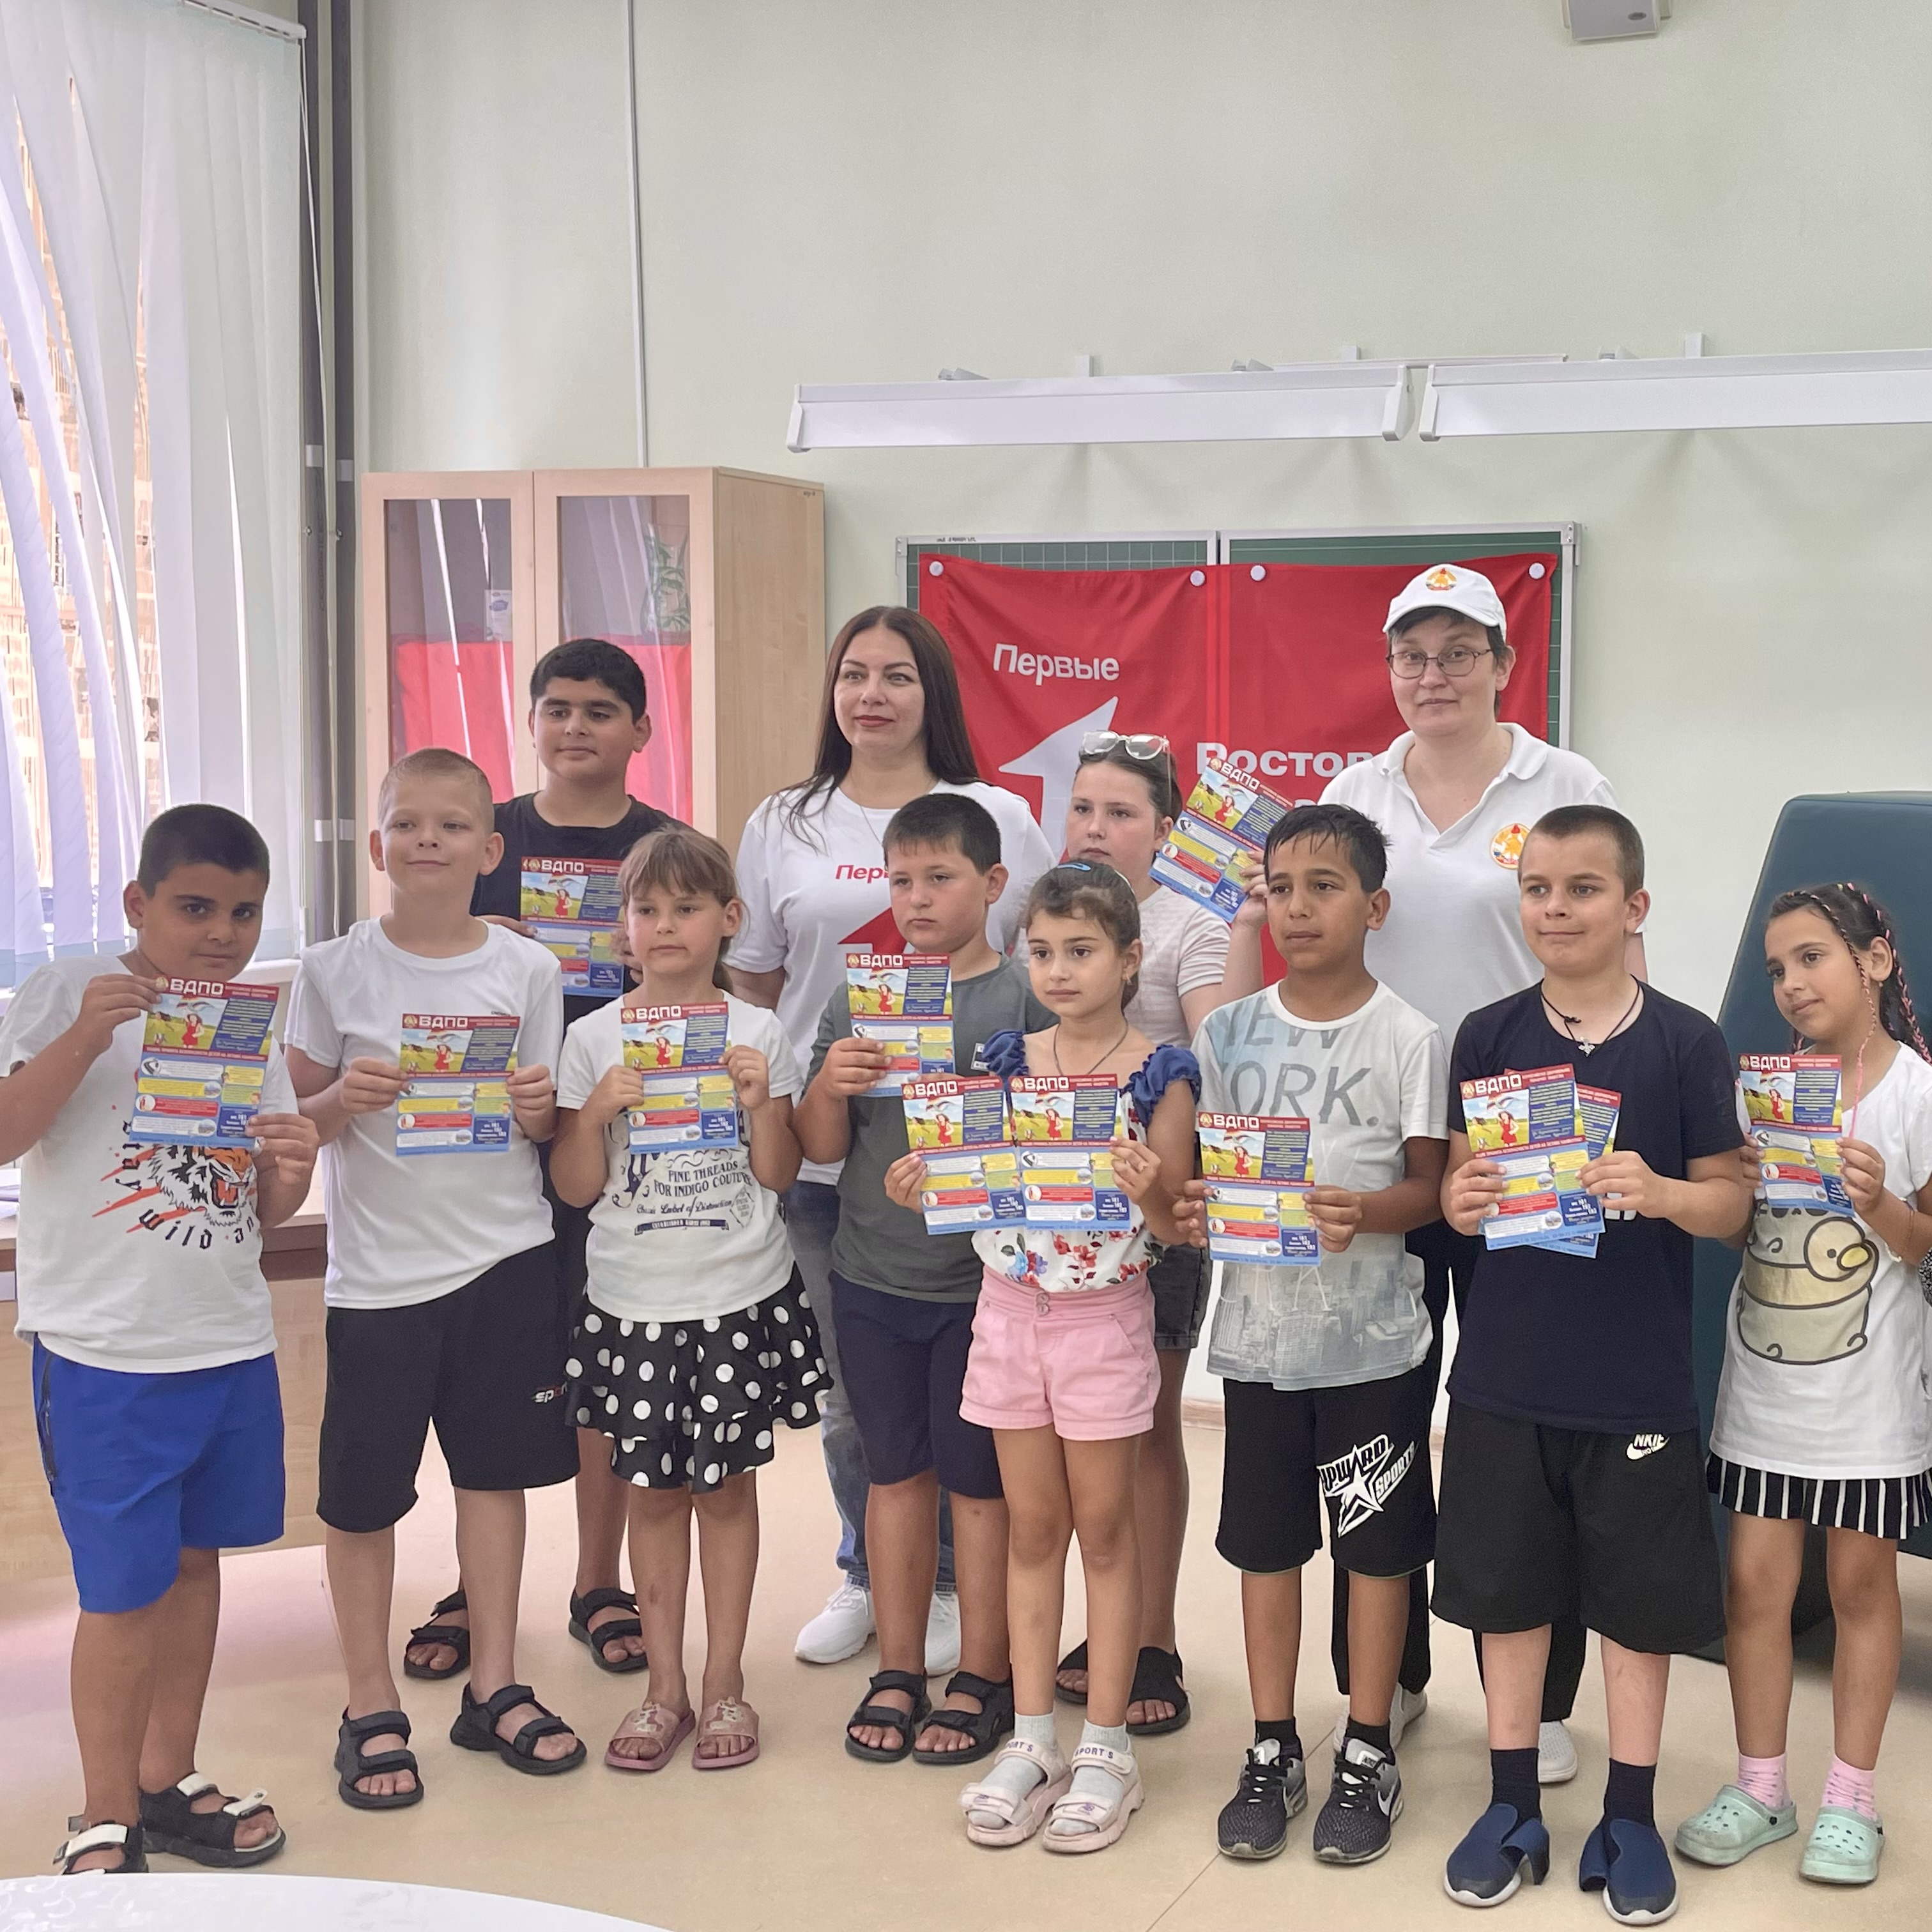 ВДПО г. Шахты участвует в «Днях Первых» в летних пришкольных лагерях